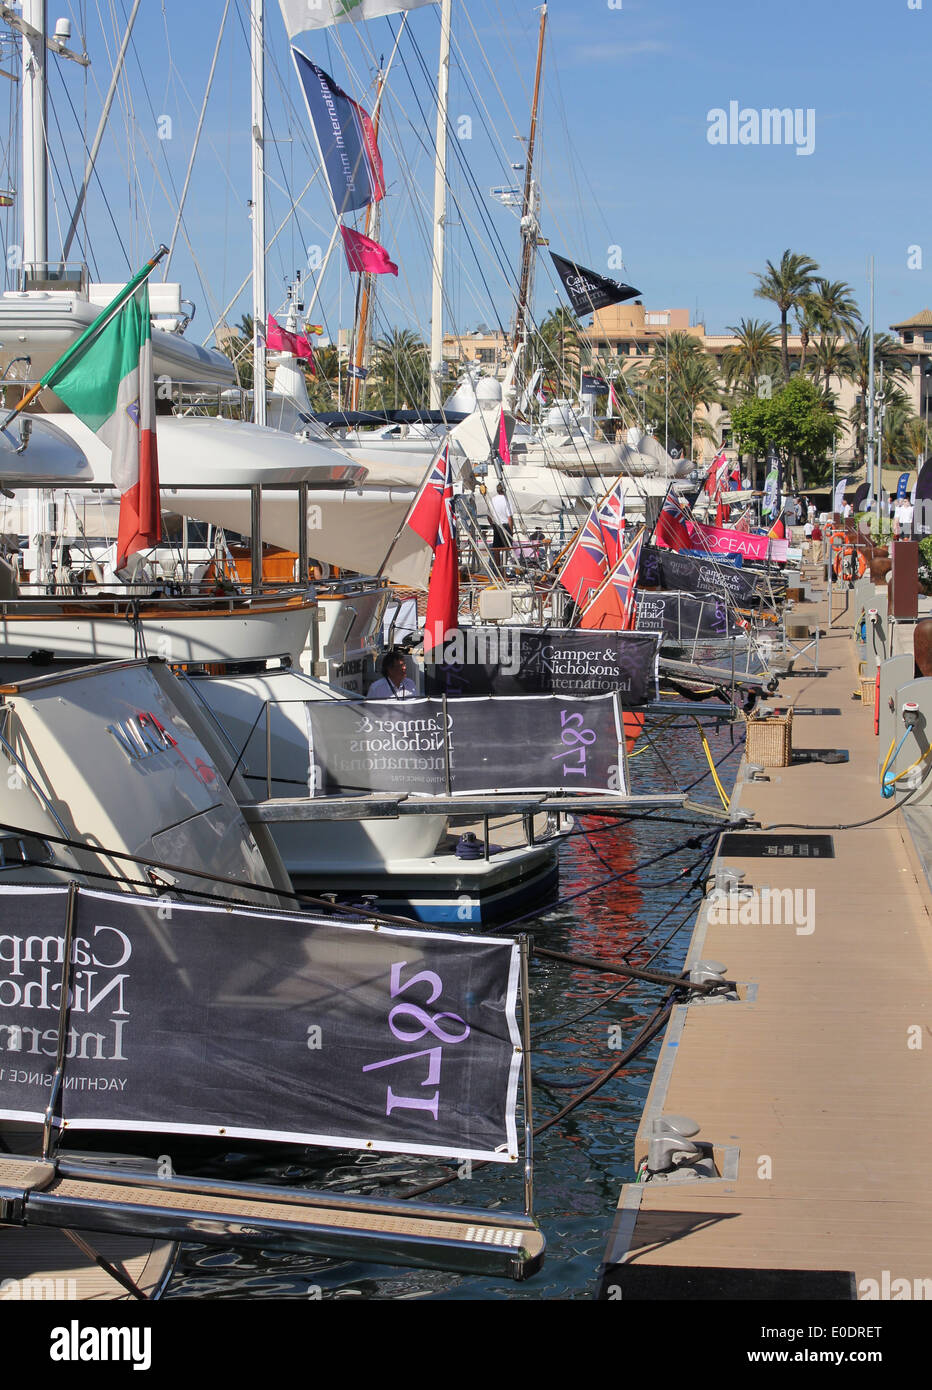 Combined - Palma Boat Show 2014 / Palma Superyacht Show 2014 - superyachts - Palma de Mallorca / Majorca, Balearic Islands Stock Photo